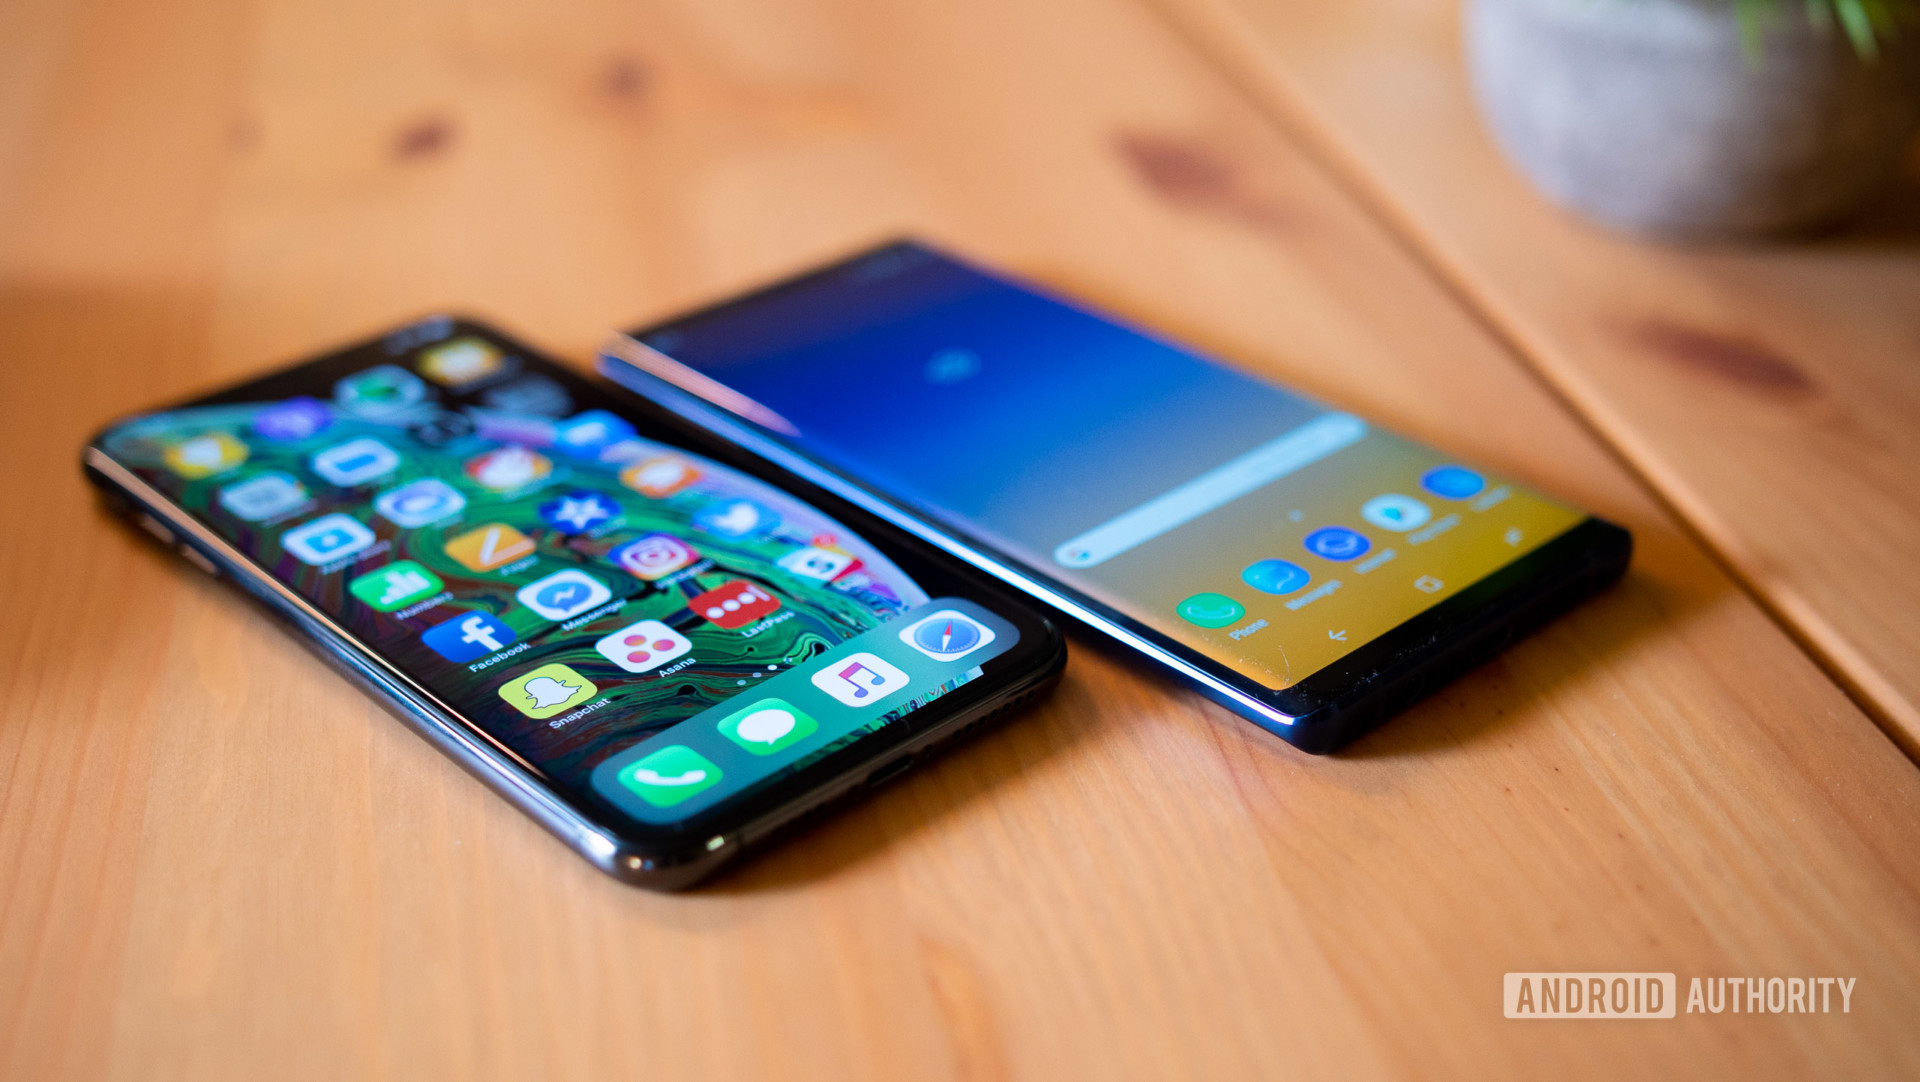 Tỷ lệ trung thành
iPhone đang giảm mạnh khi người dùng iPhone đang có xu hướng
chuyển sang dùng Samsung